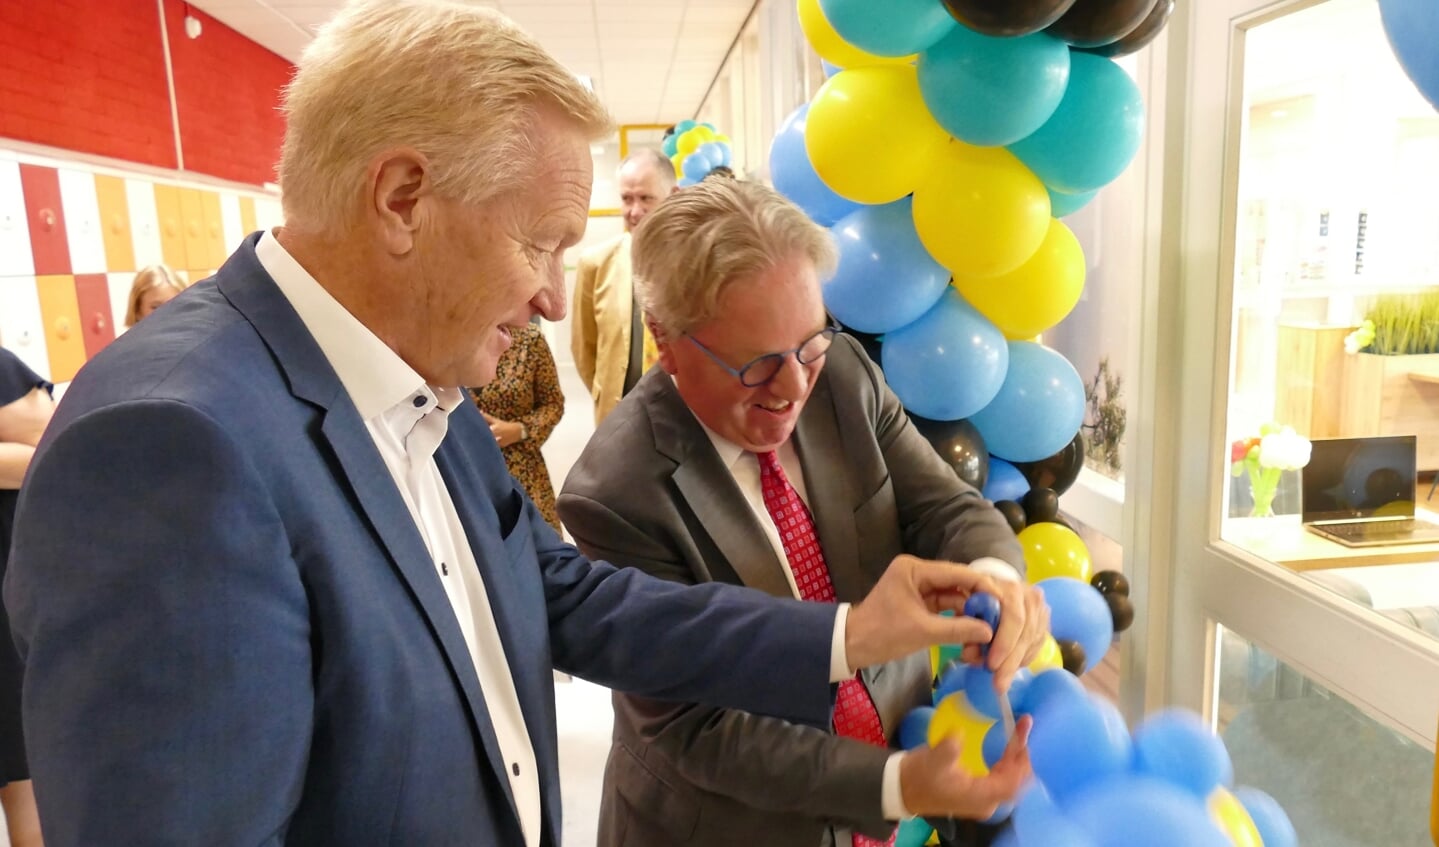 Wethouder Hans van der Velde prikte samen met rector Benedict Hamans, symbolisch in een ballon voor de feestelijke opening.